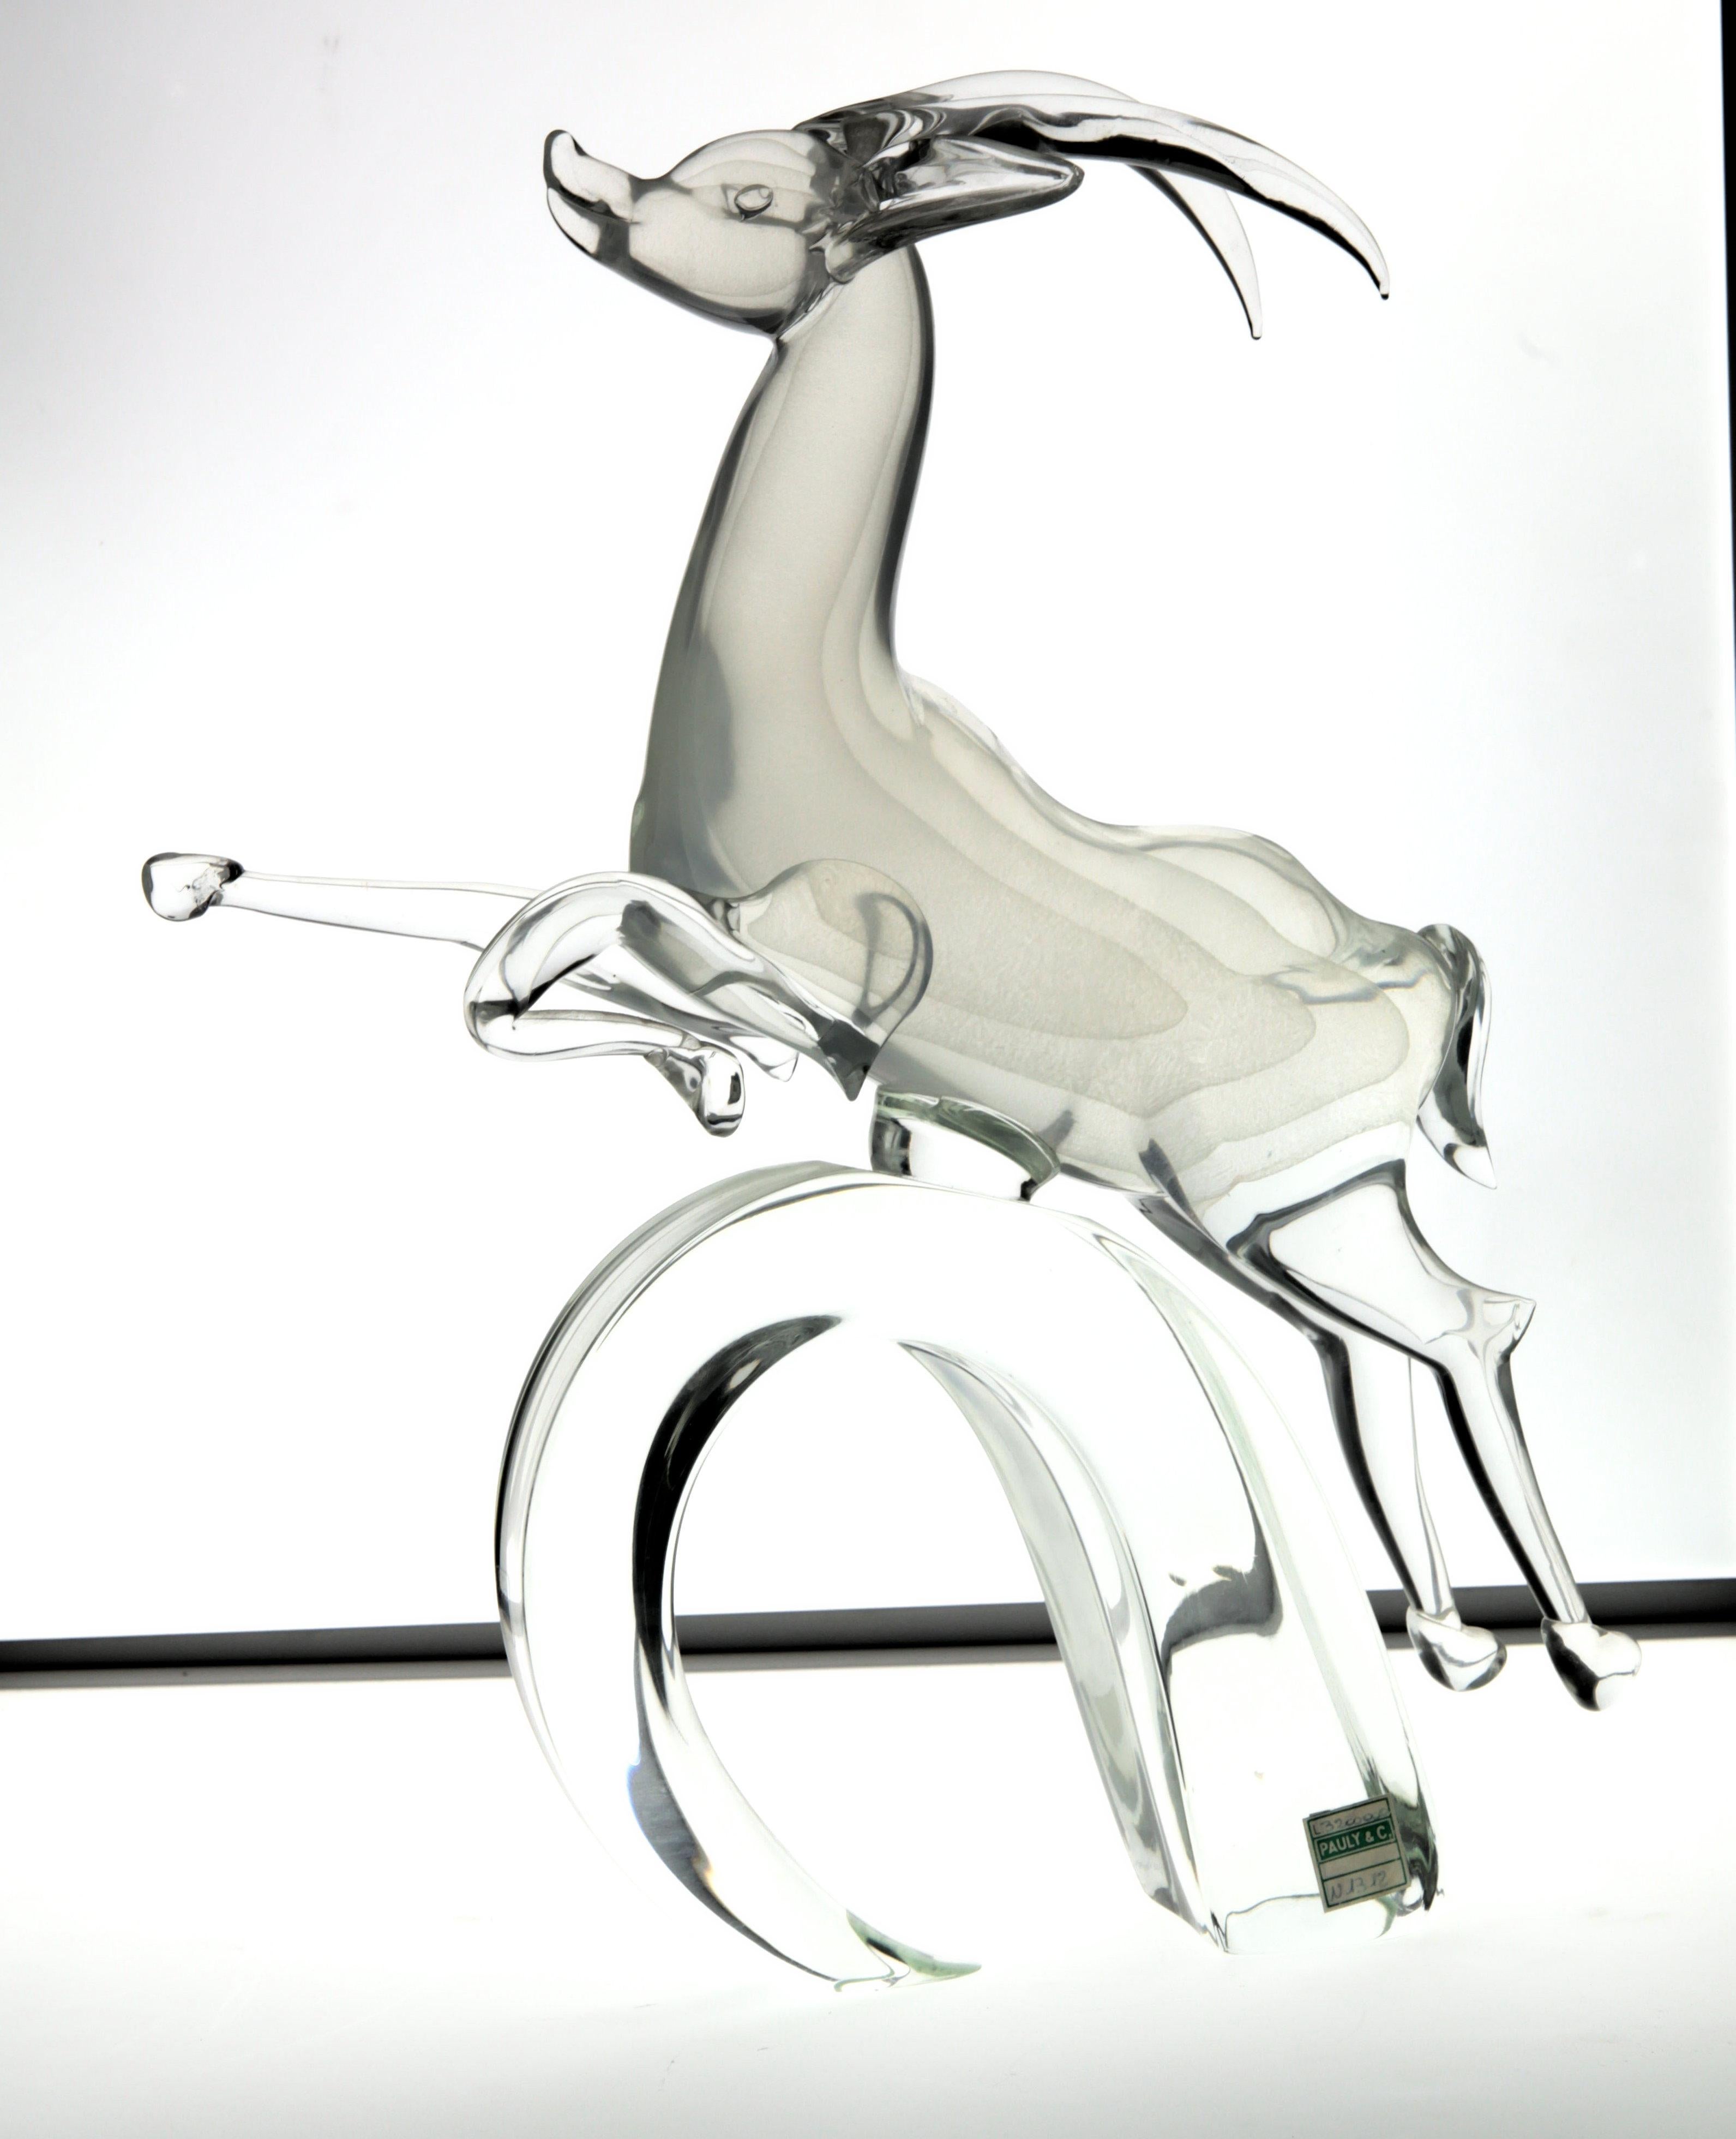 Hand-Crafted Licio Zanetti for Pauly Ibex Leaping Balsamo Stella Design, Murano 1990s, Signed